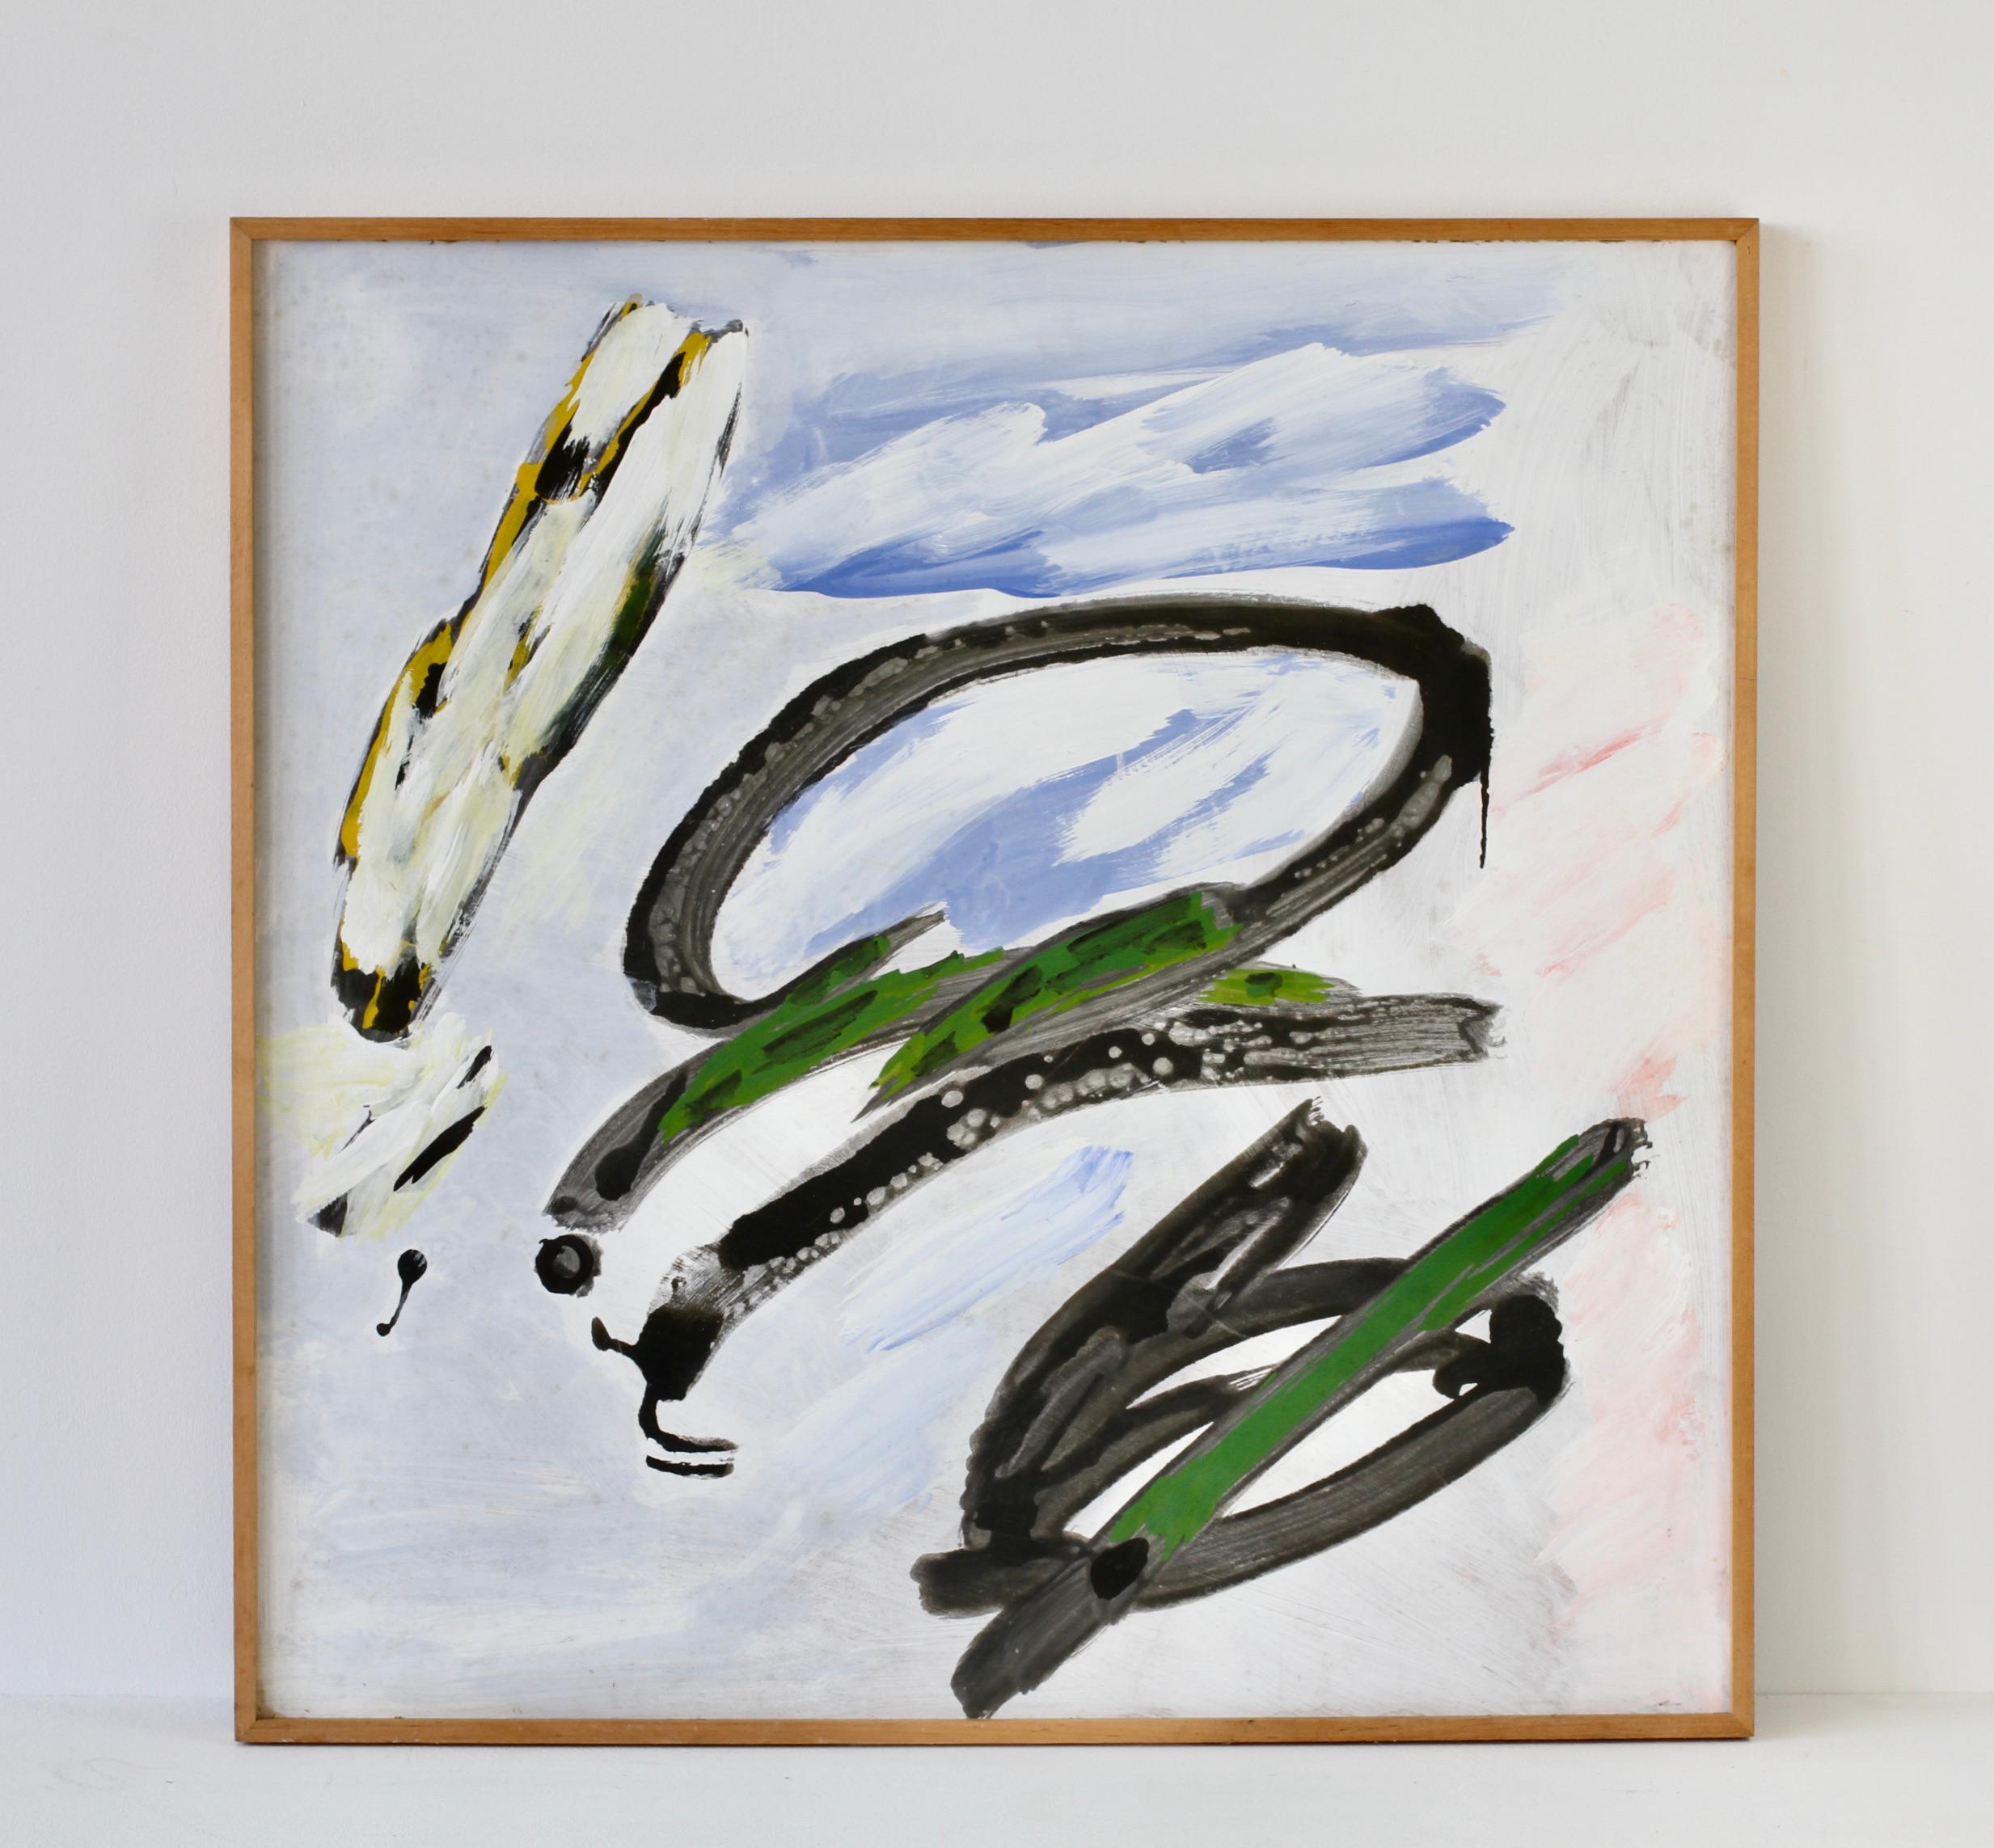 Peinture informelle abstraite moderniste signée par l'artiste allemand Walter Wohlschlegel (1907-1999). Peinte vers les années 1970, cette pièce sans titre est peinte sur un panneau dur. Ici, Wohlschlegel crée un jeu de couleurs intéressant,